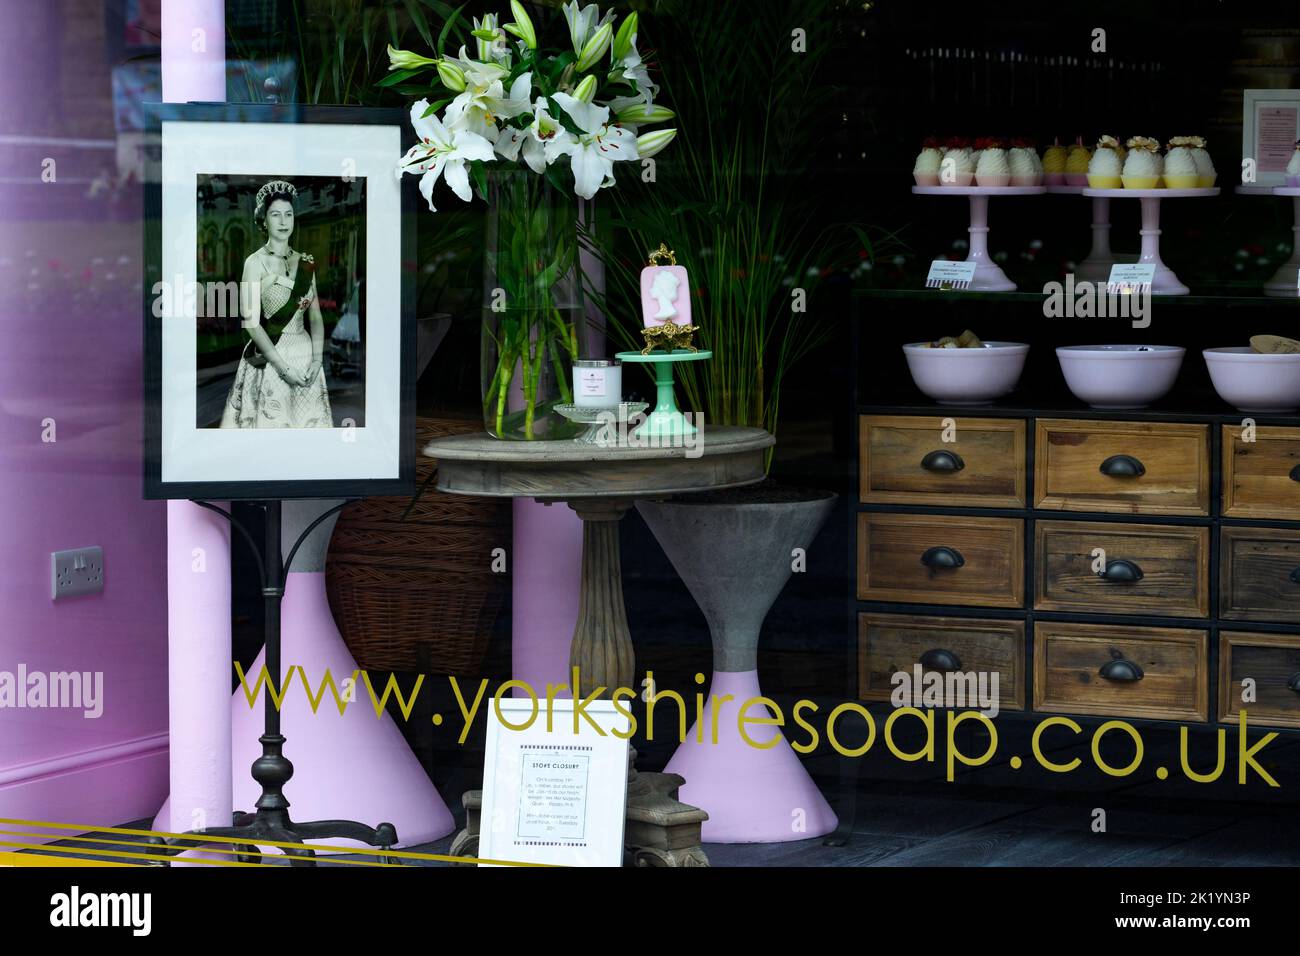 La morte della regina (poignant tributo emotivo del negozio che ricorda di rendere omaggio a Elizabeth 2) - Yorkshire SOAP Company, Ilkley, Inghilterra, Regno Unito. Foto Stock